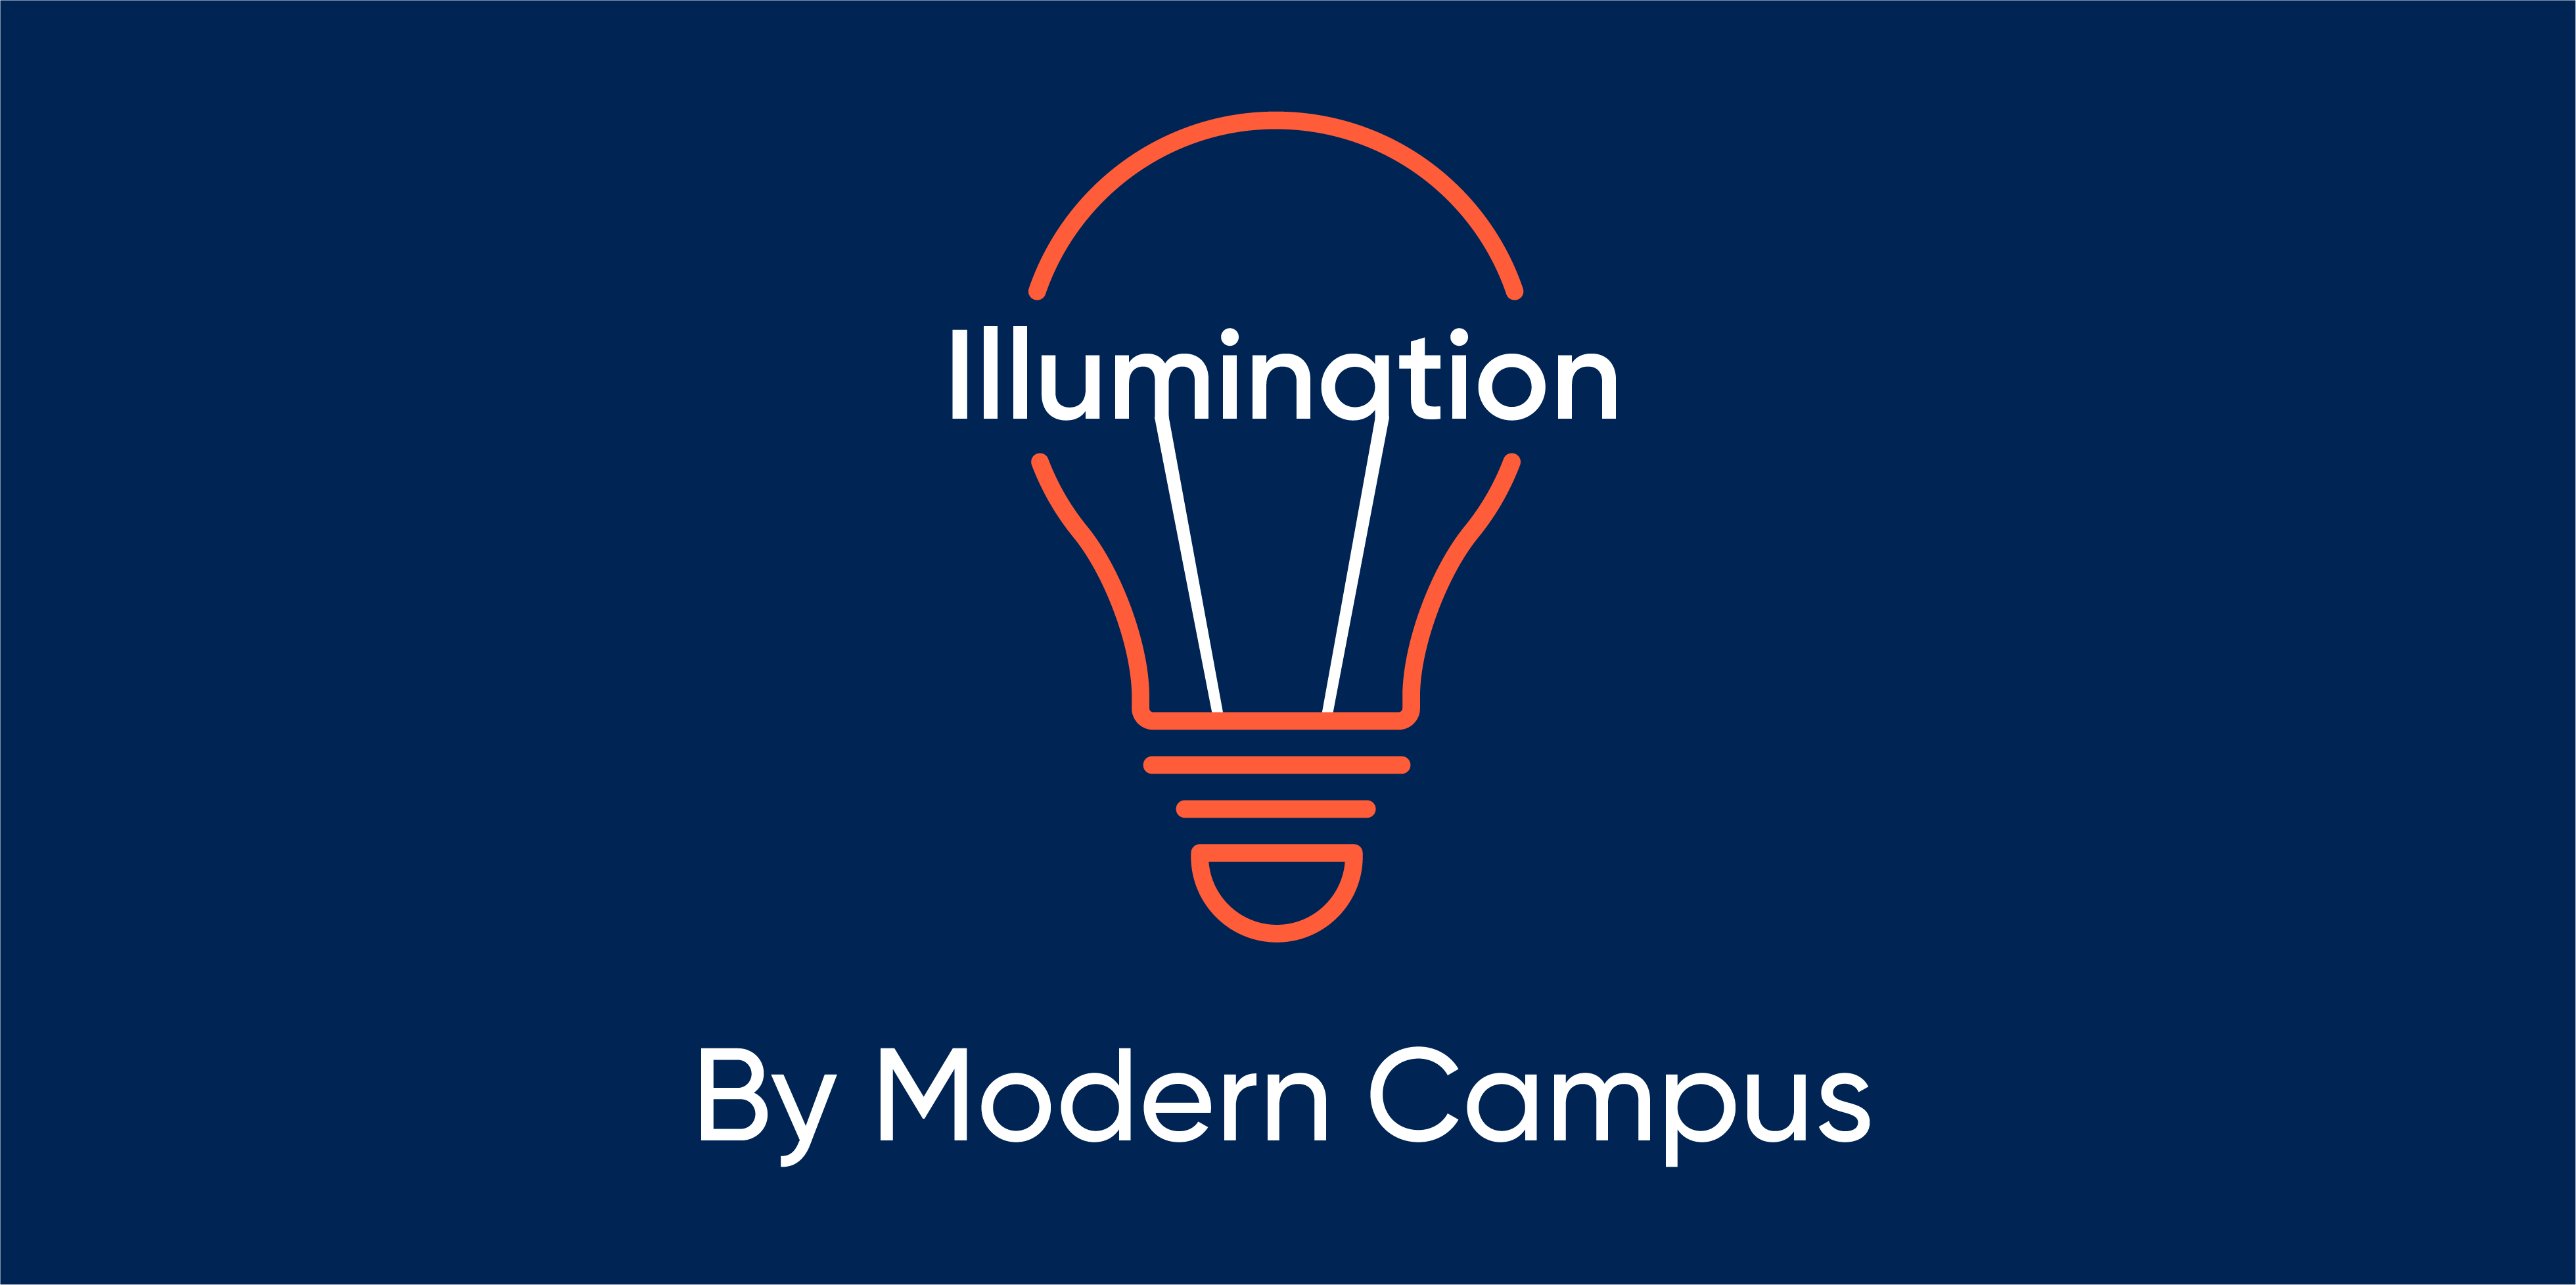 Episode 102: Illumination by Modern Campus